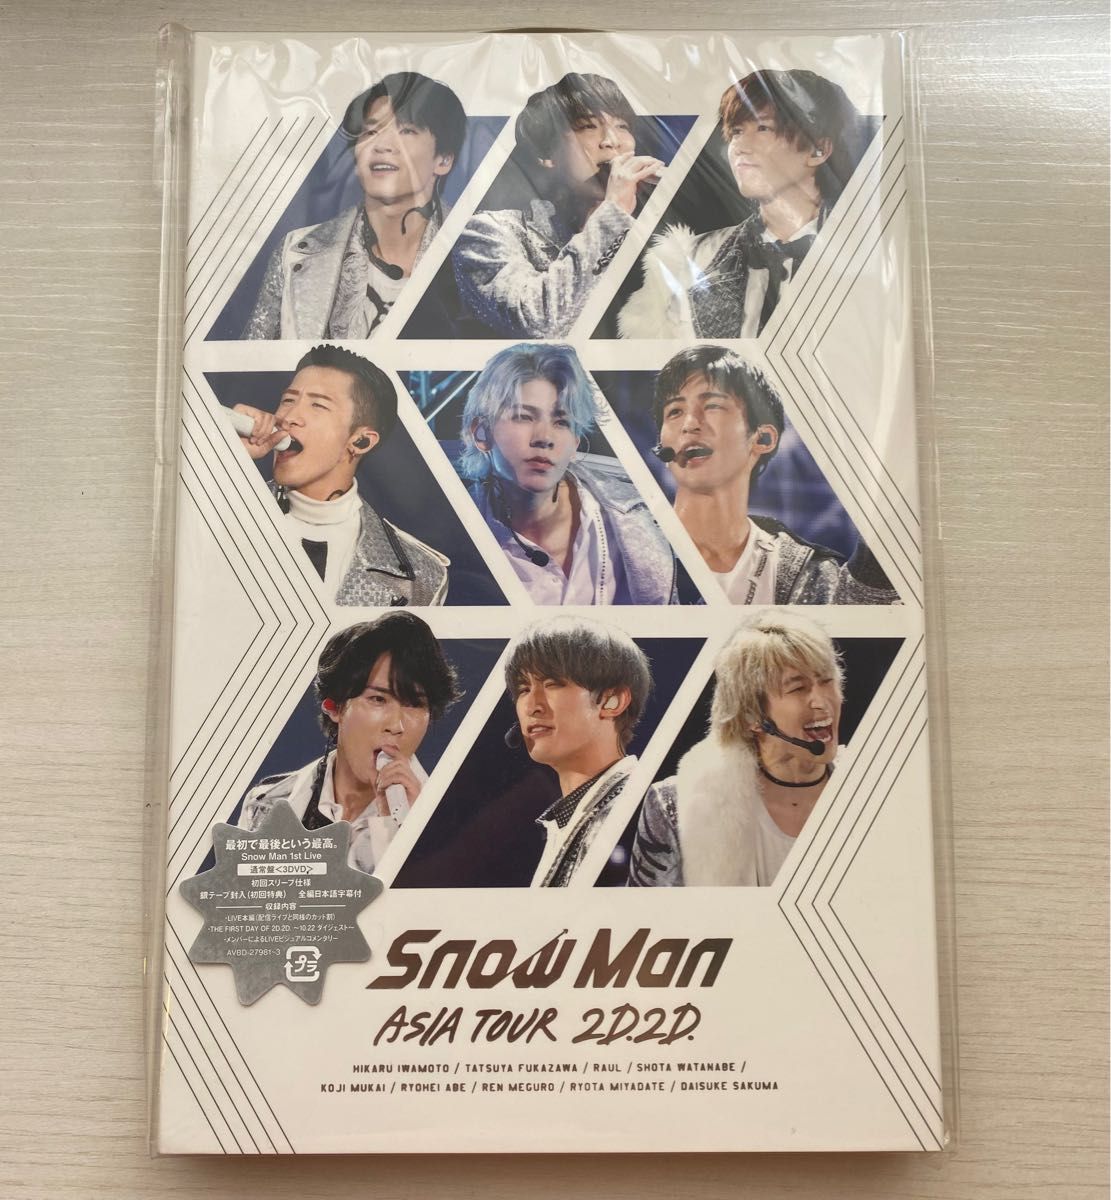 snowman アジアツアー 2D2D パンフレット - 男性アイドル